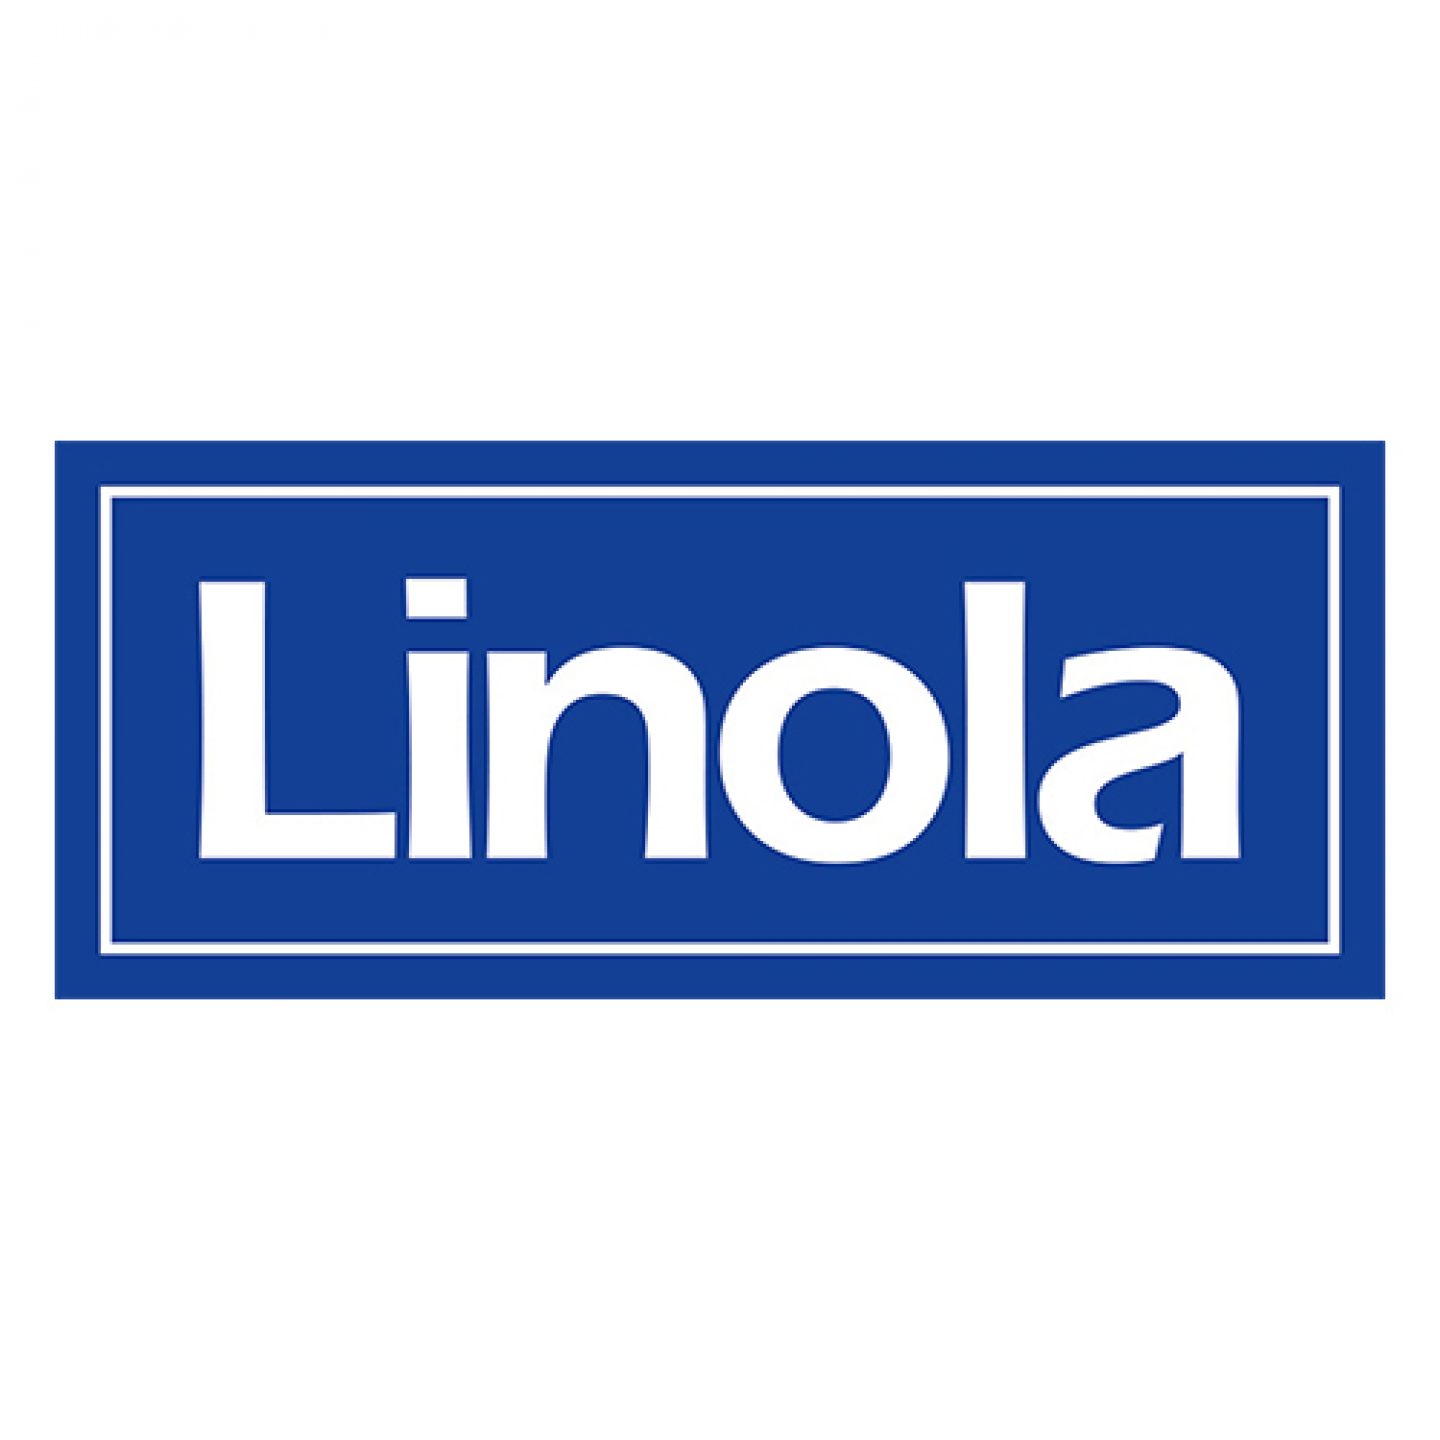 EEZ-Apotheke Marken Logo Linola